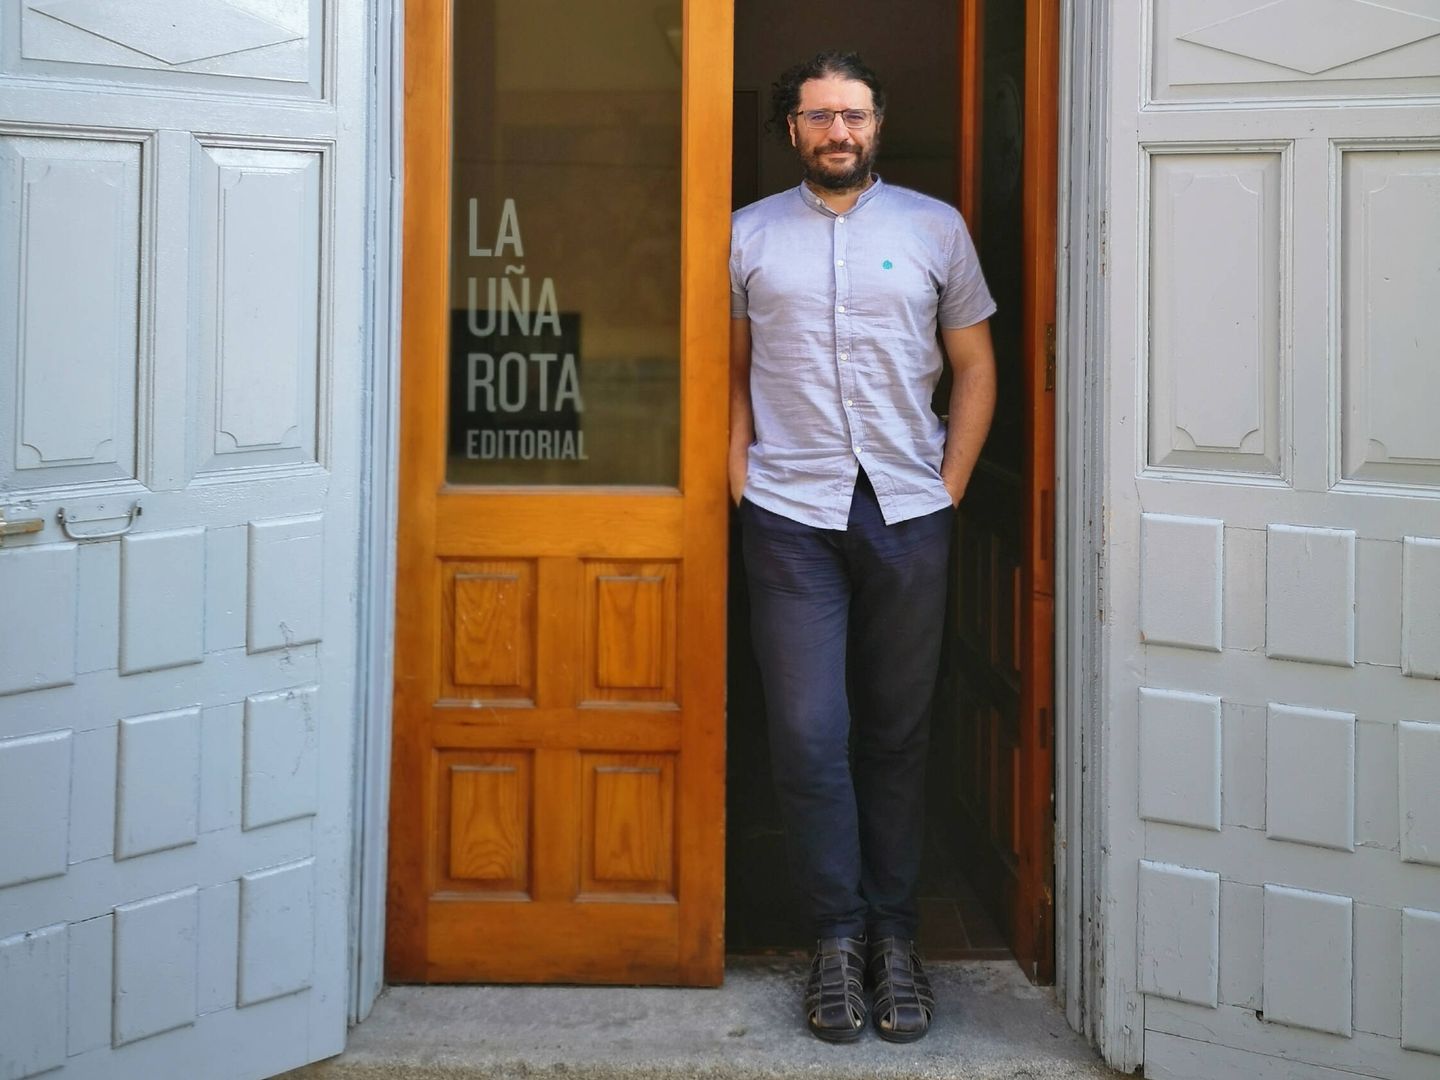 El editor de La Uña Rota, Carlos Rod. (Cedida)